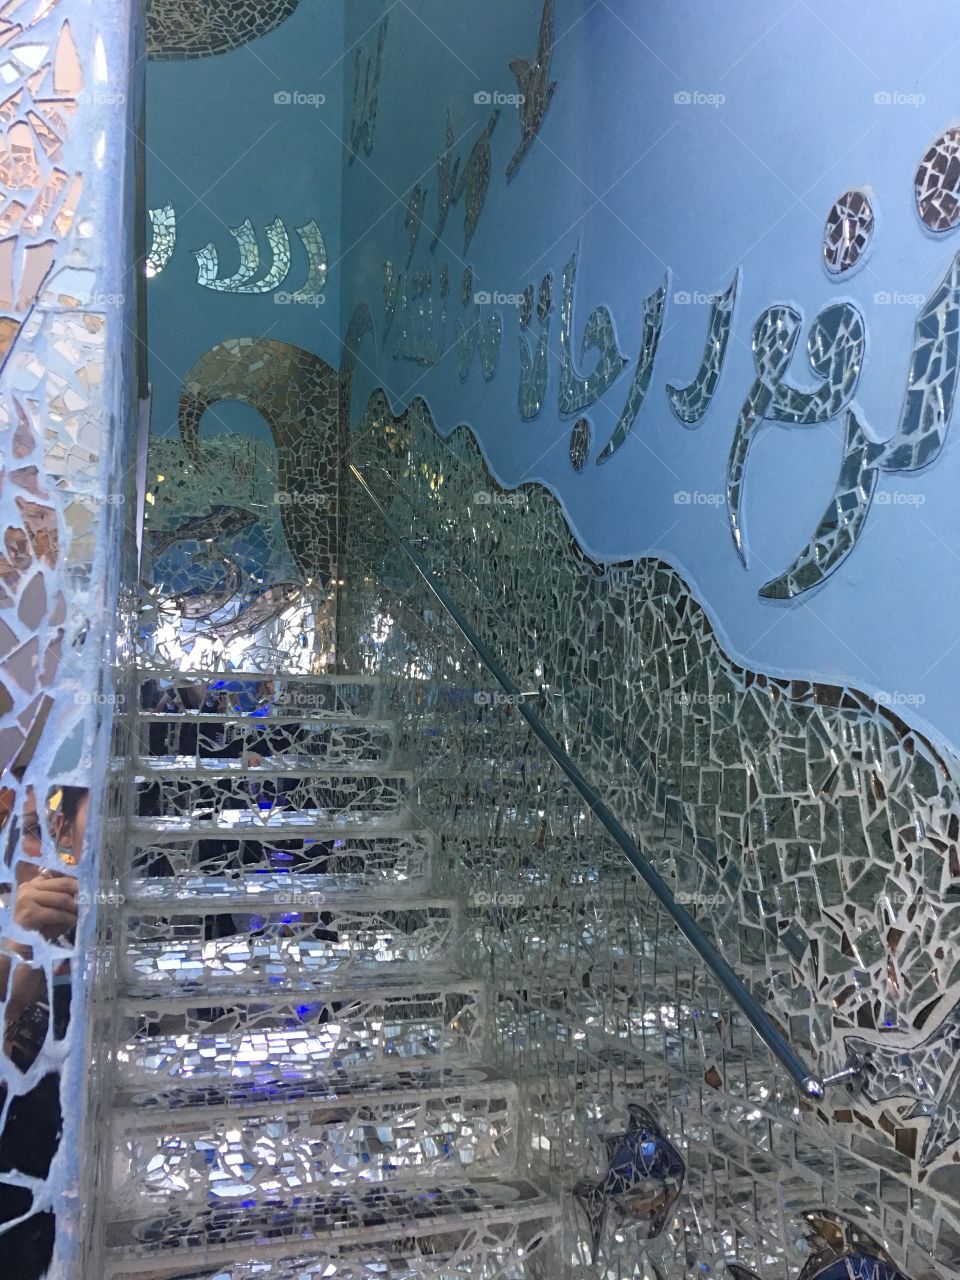 Mirrored stairs